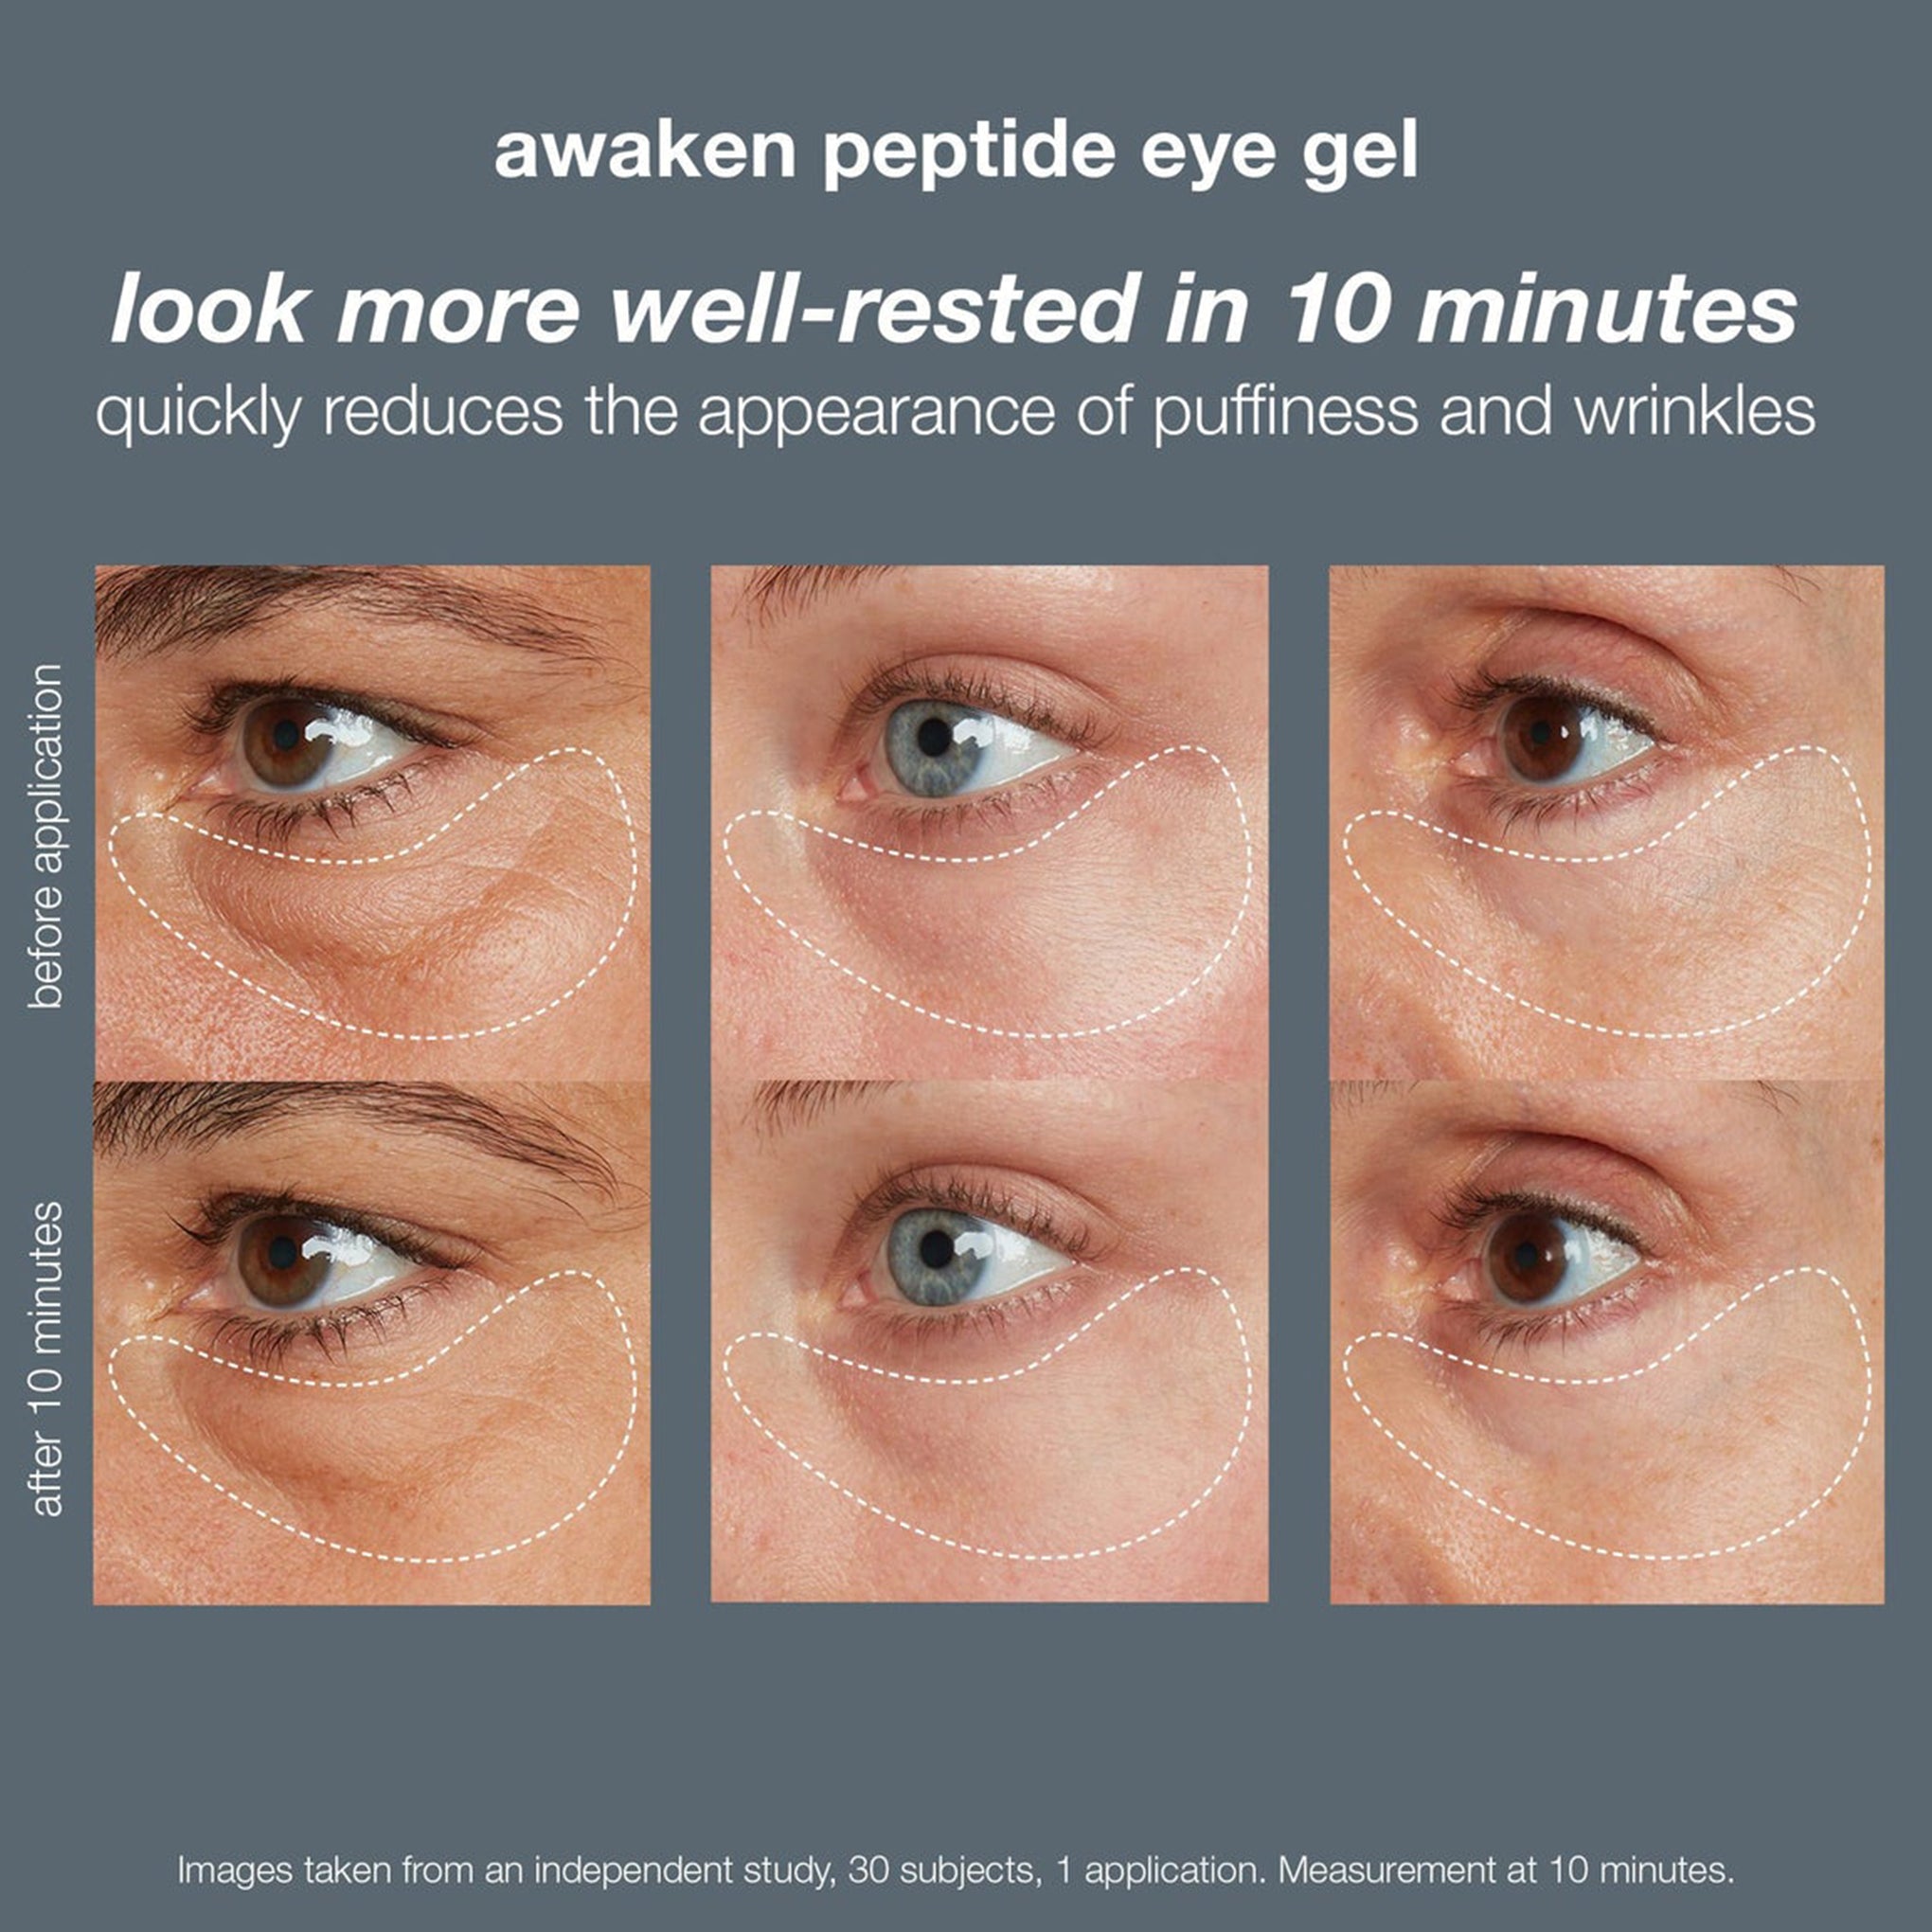 awaken peptide depuffing eye gel